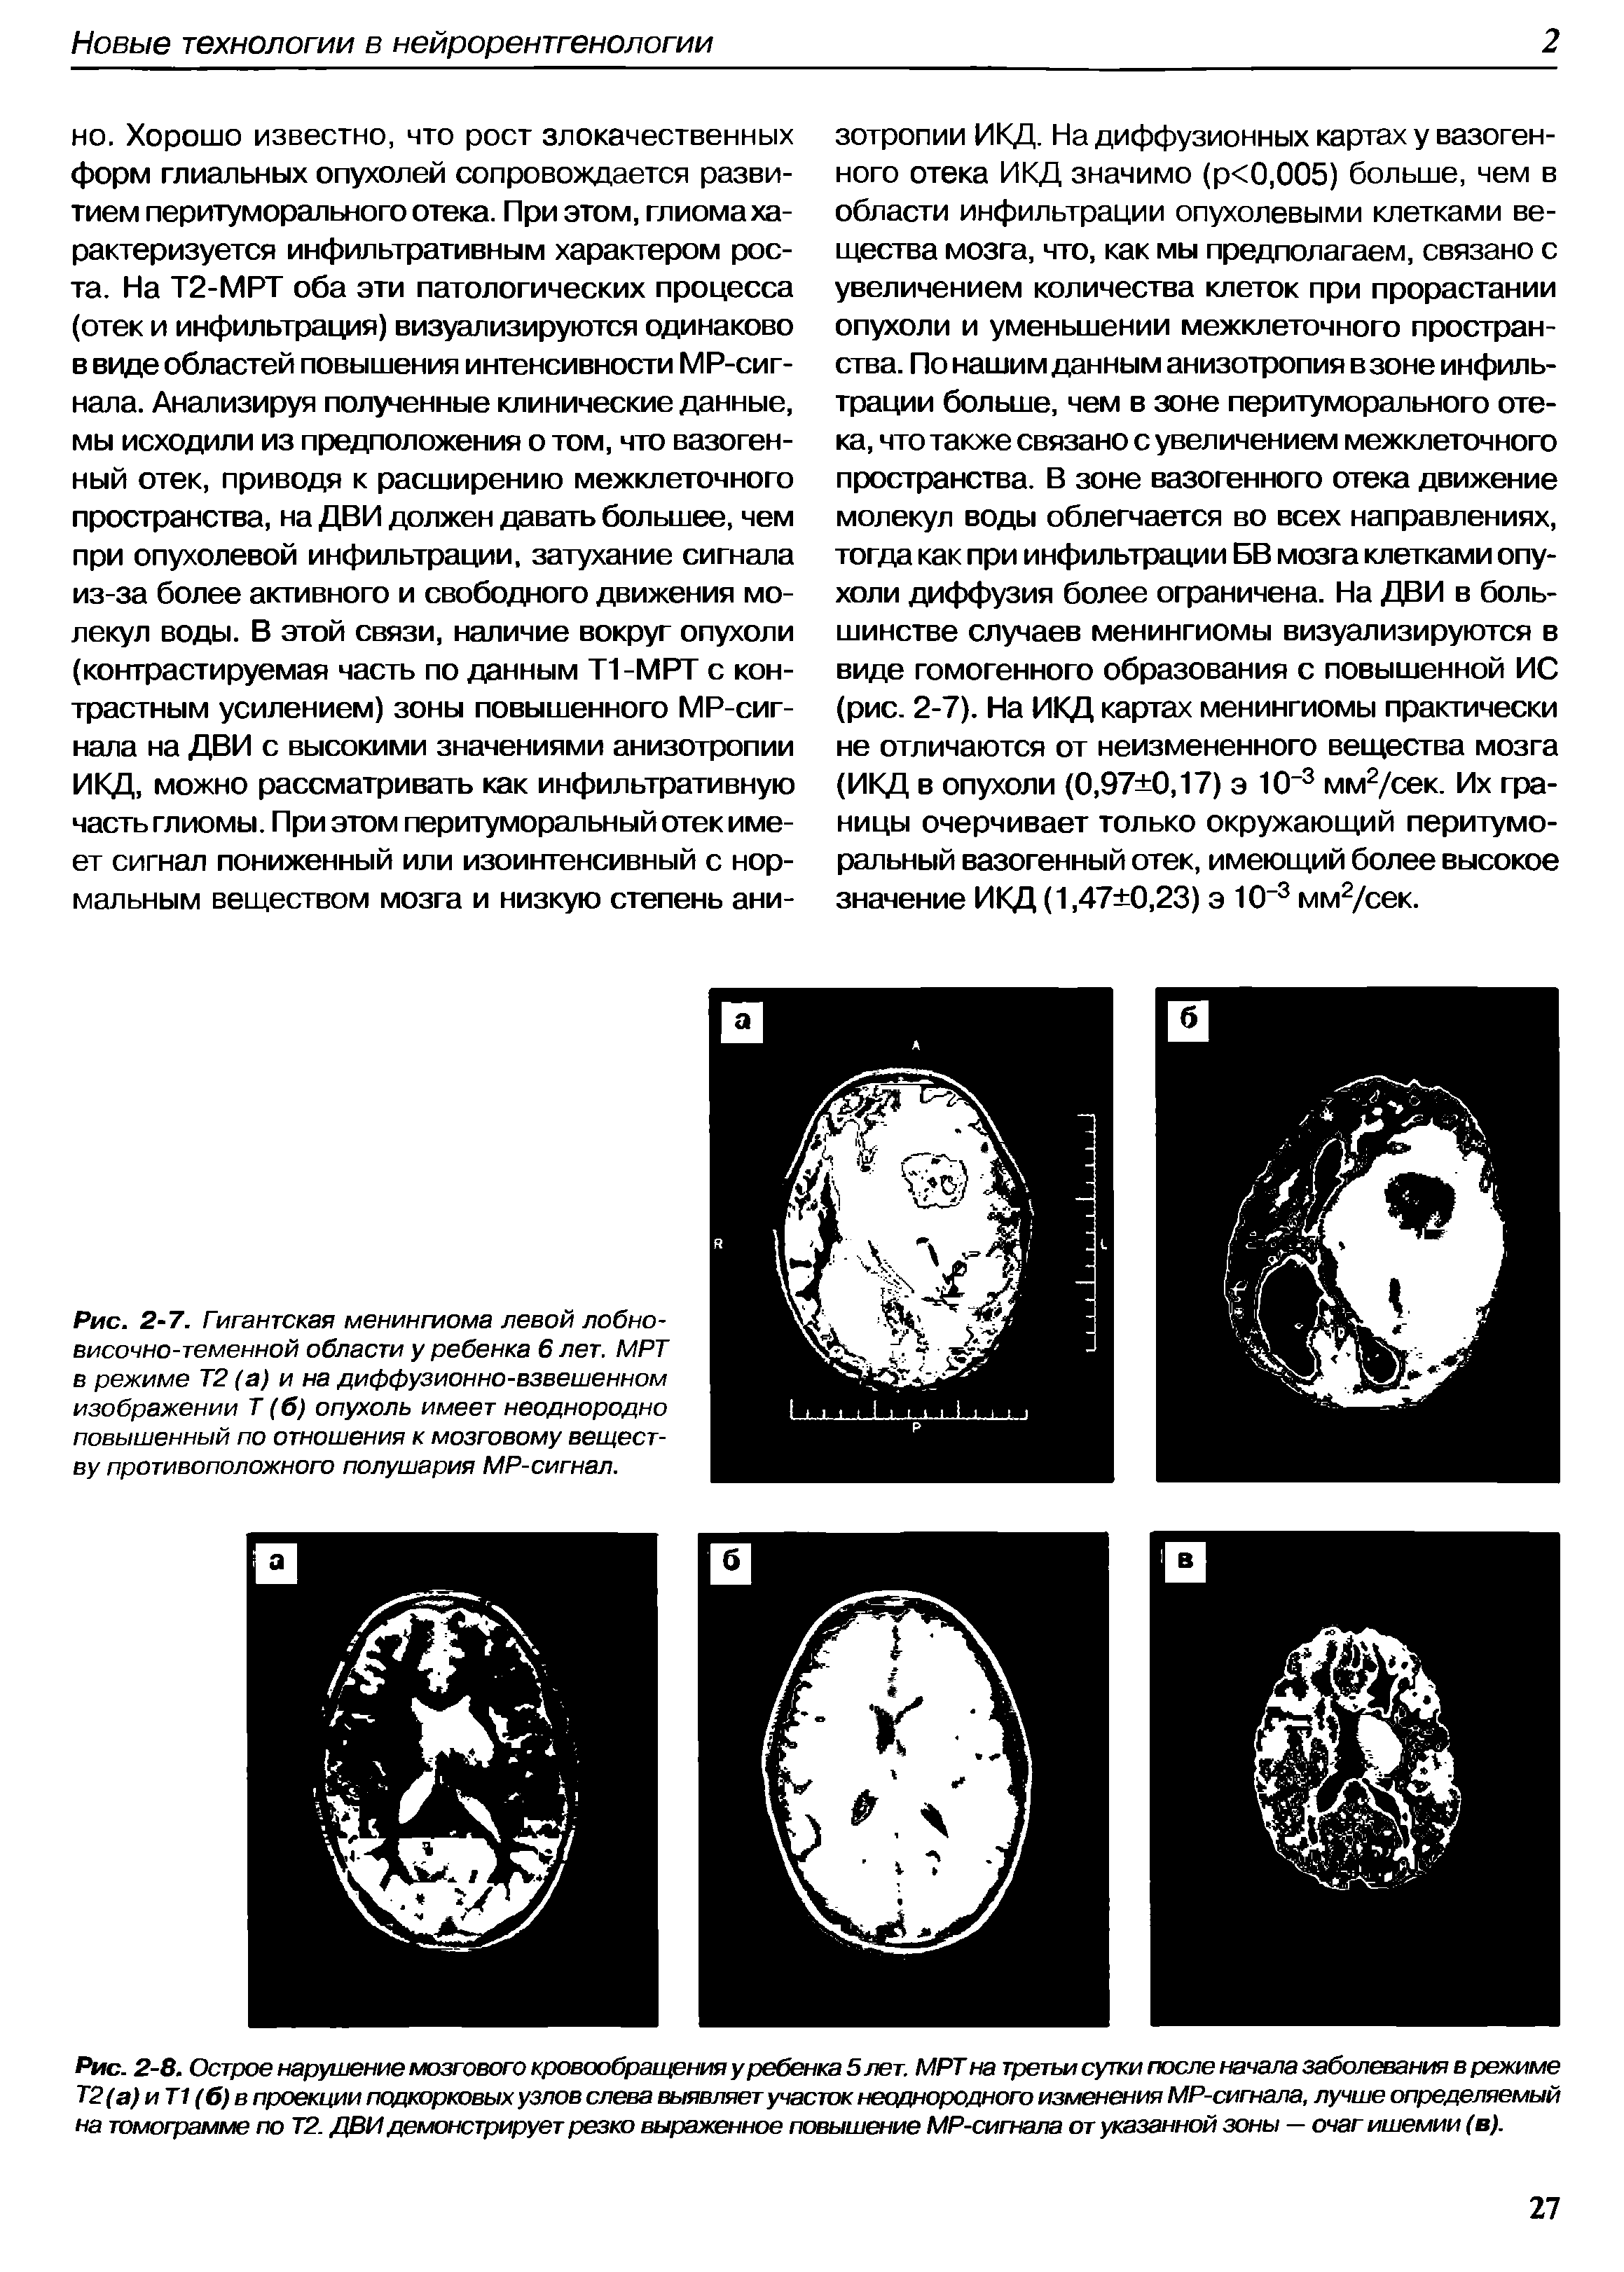 Рис. 2-7. Гигантская менингиома левой лобновисочно-теменной области у ребенка 6 лет. МРТ в режиме Т2 (а) и на диффузионно-взвешенном изображении Т (б) опухоль имеет неоднородно повышенный по отношения к мозговому веществу противоположного полушария МР-сигнал.